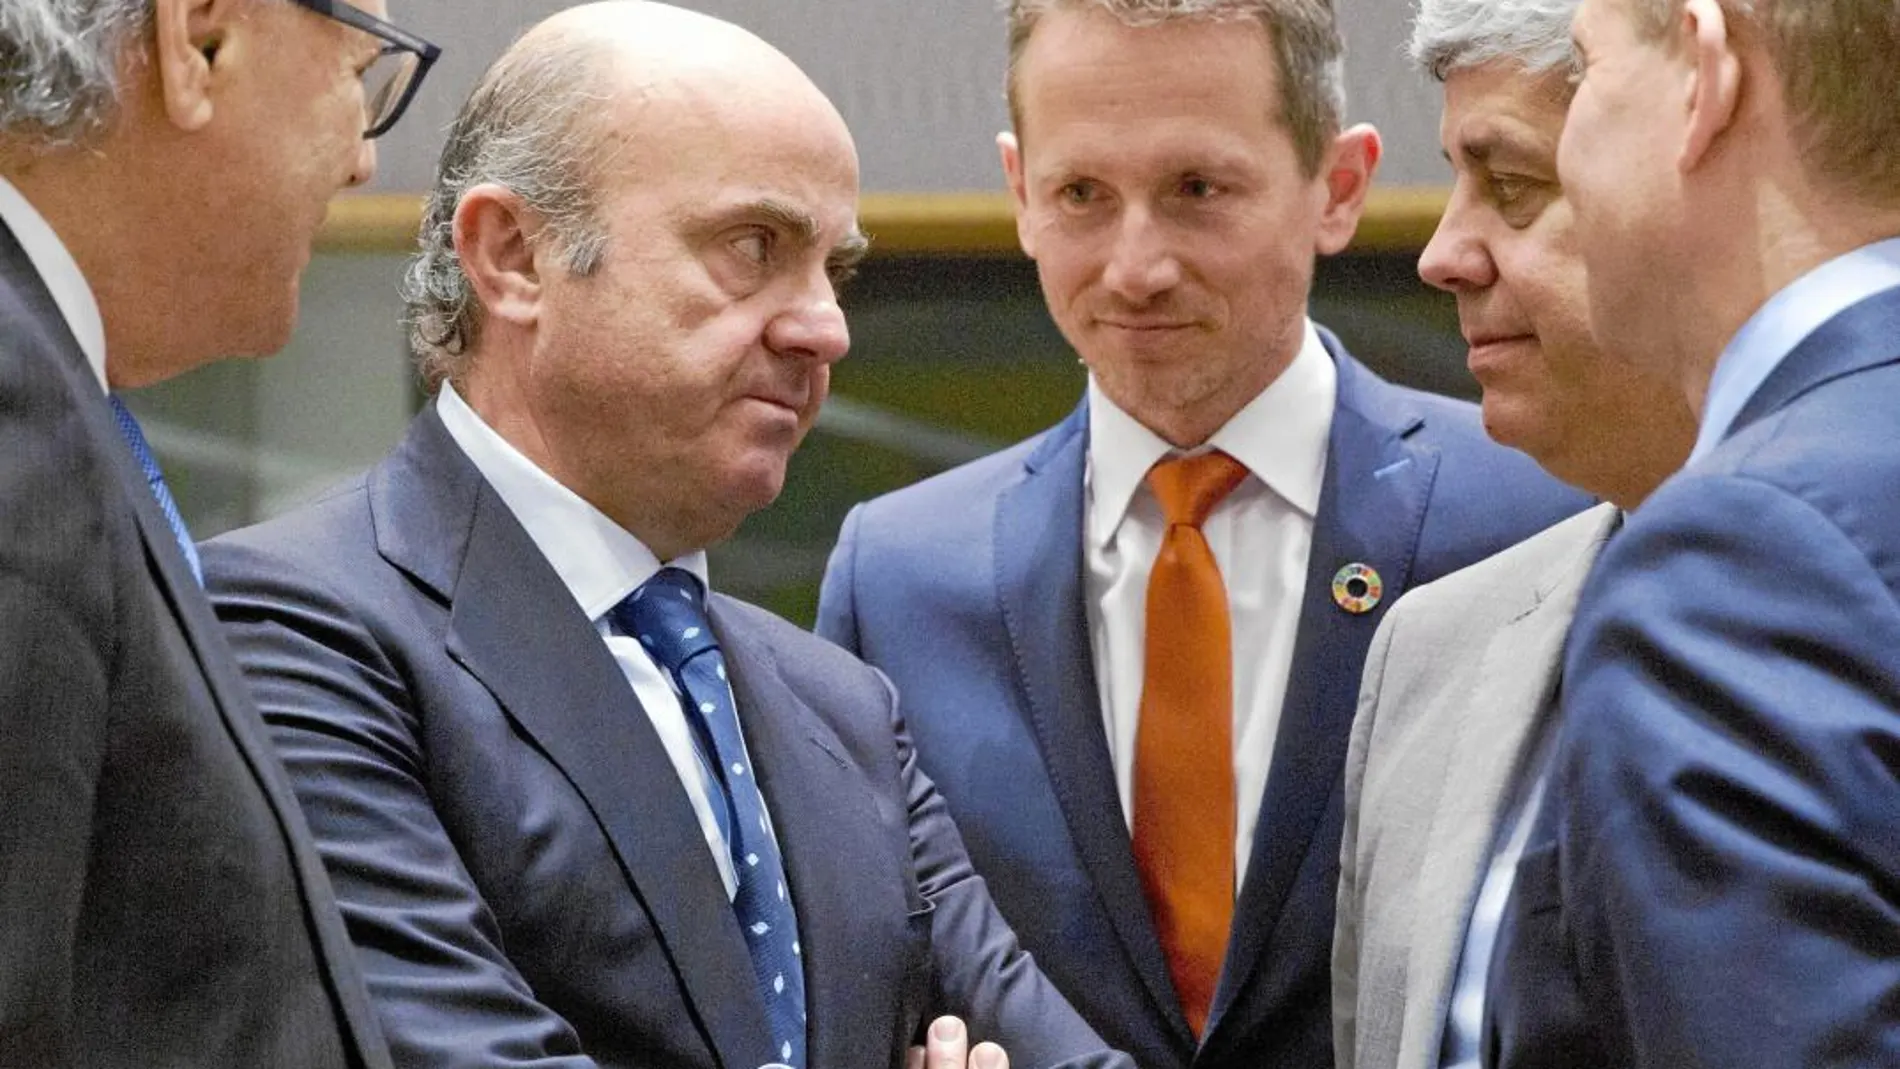 El flamante vicepresidente del BCE, rodeado de sus todavía homólogos europeos, ayer, en Bruselas